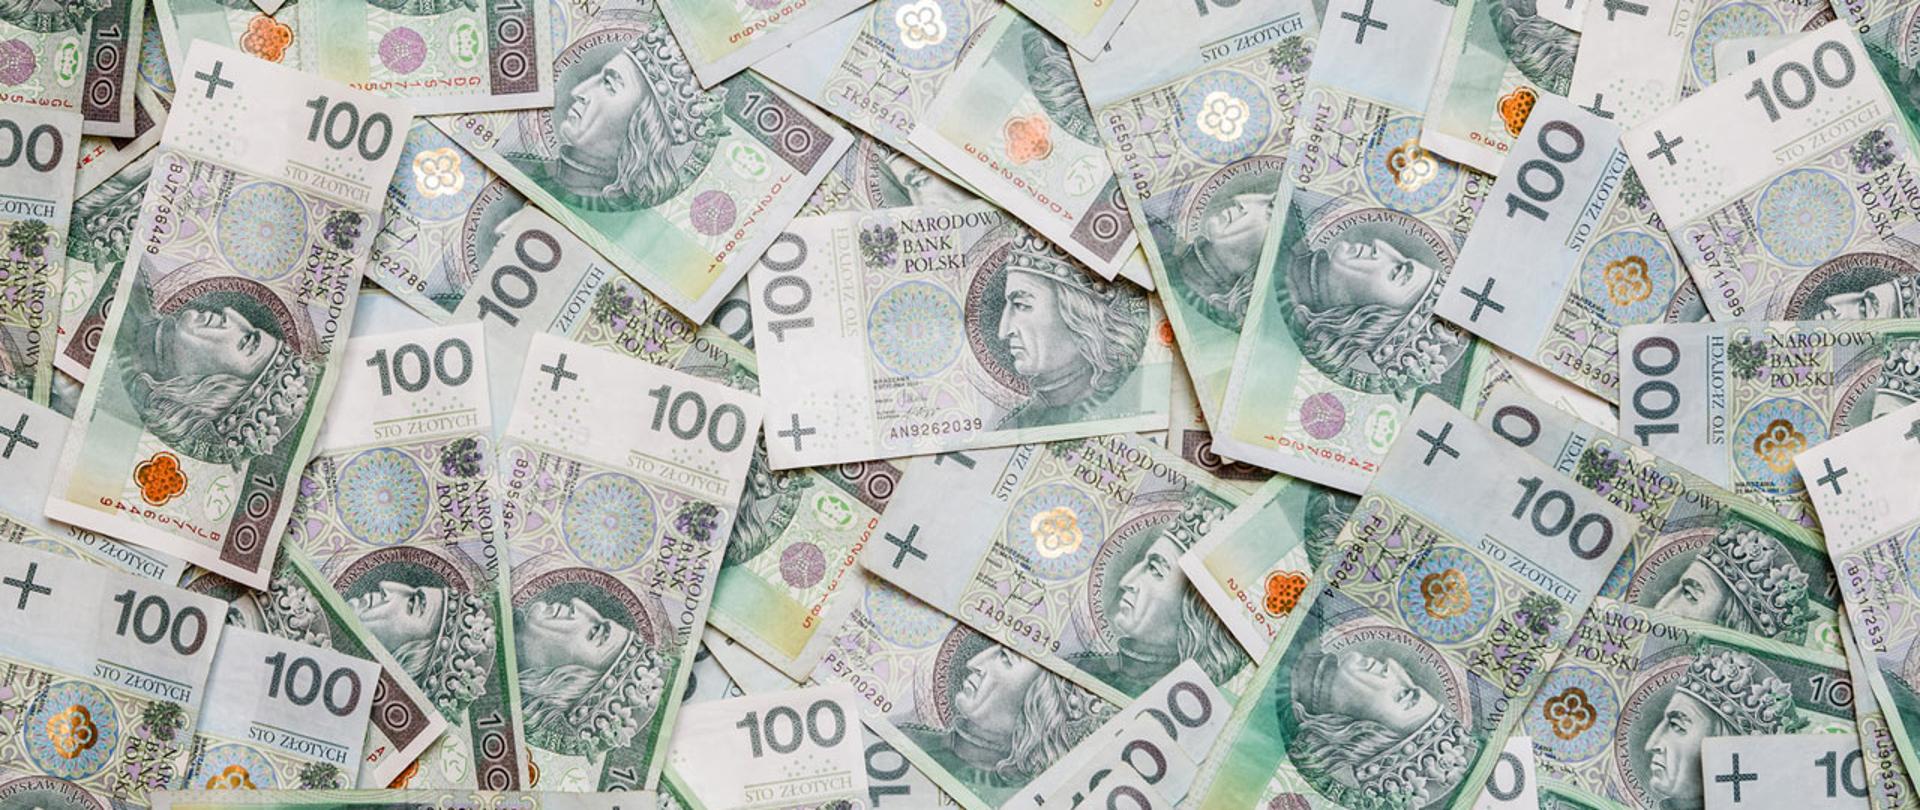 Zdjęcie poglądowe z rozrzuconymi banknotami o nominale 100 zł.